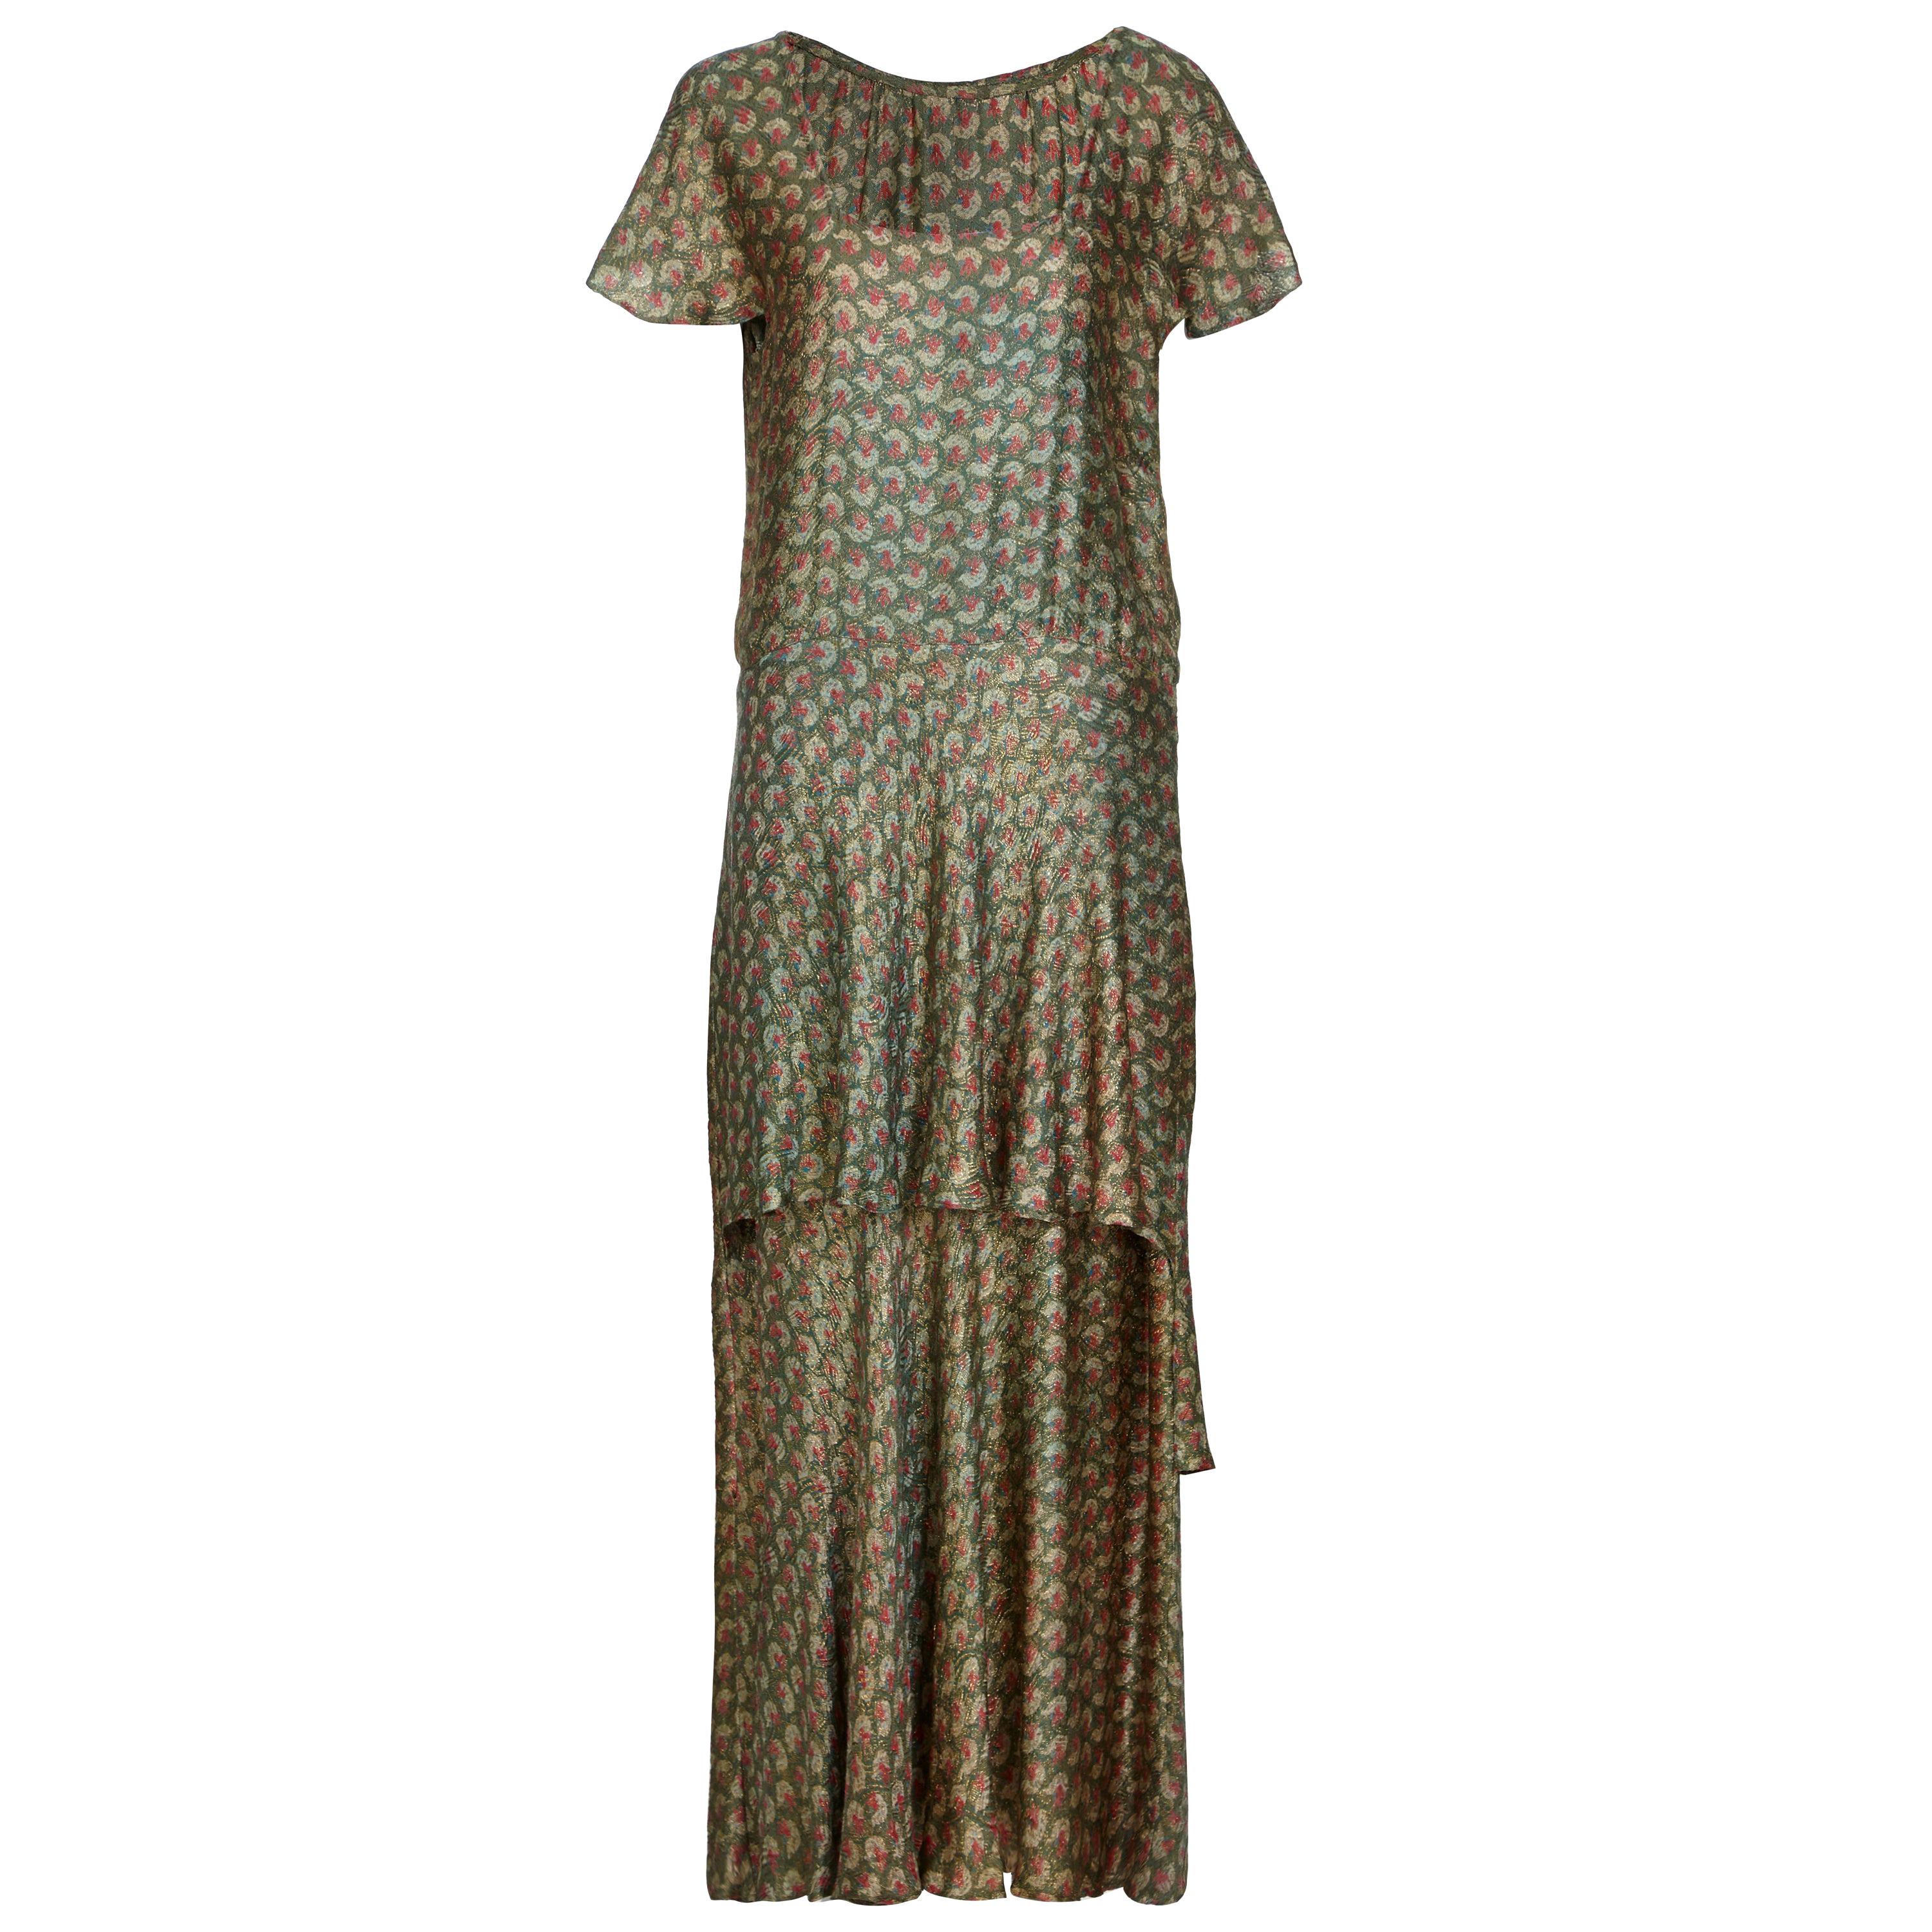 Best and Co 1920s gestuftes Lamé-Kleid mit Decoprint 